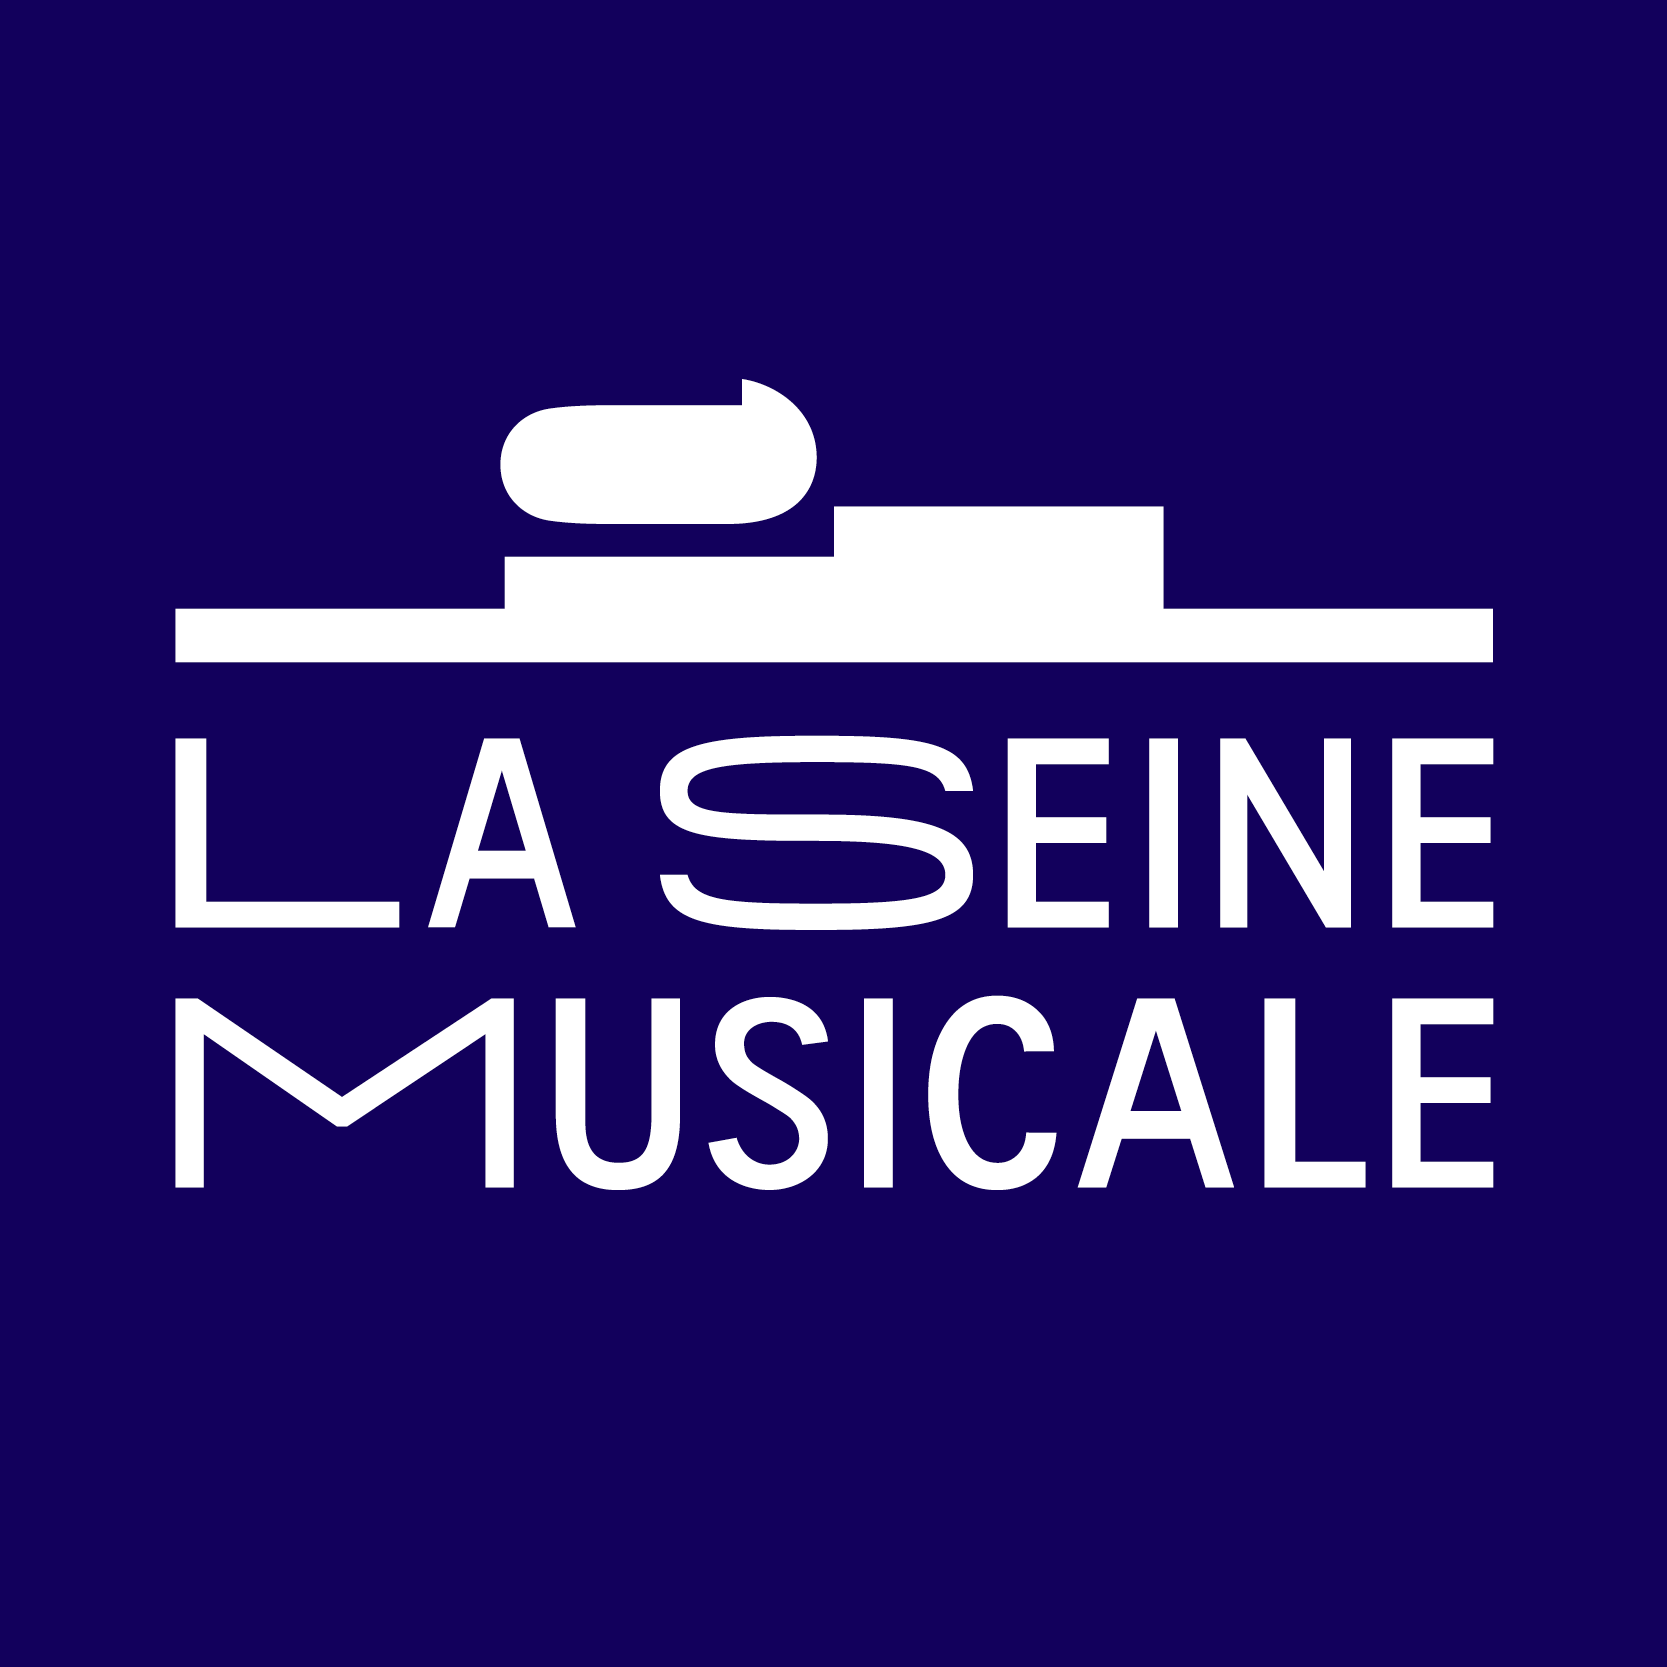 Insula Orchestra in der La Seine Musicale Tickets